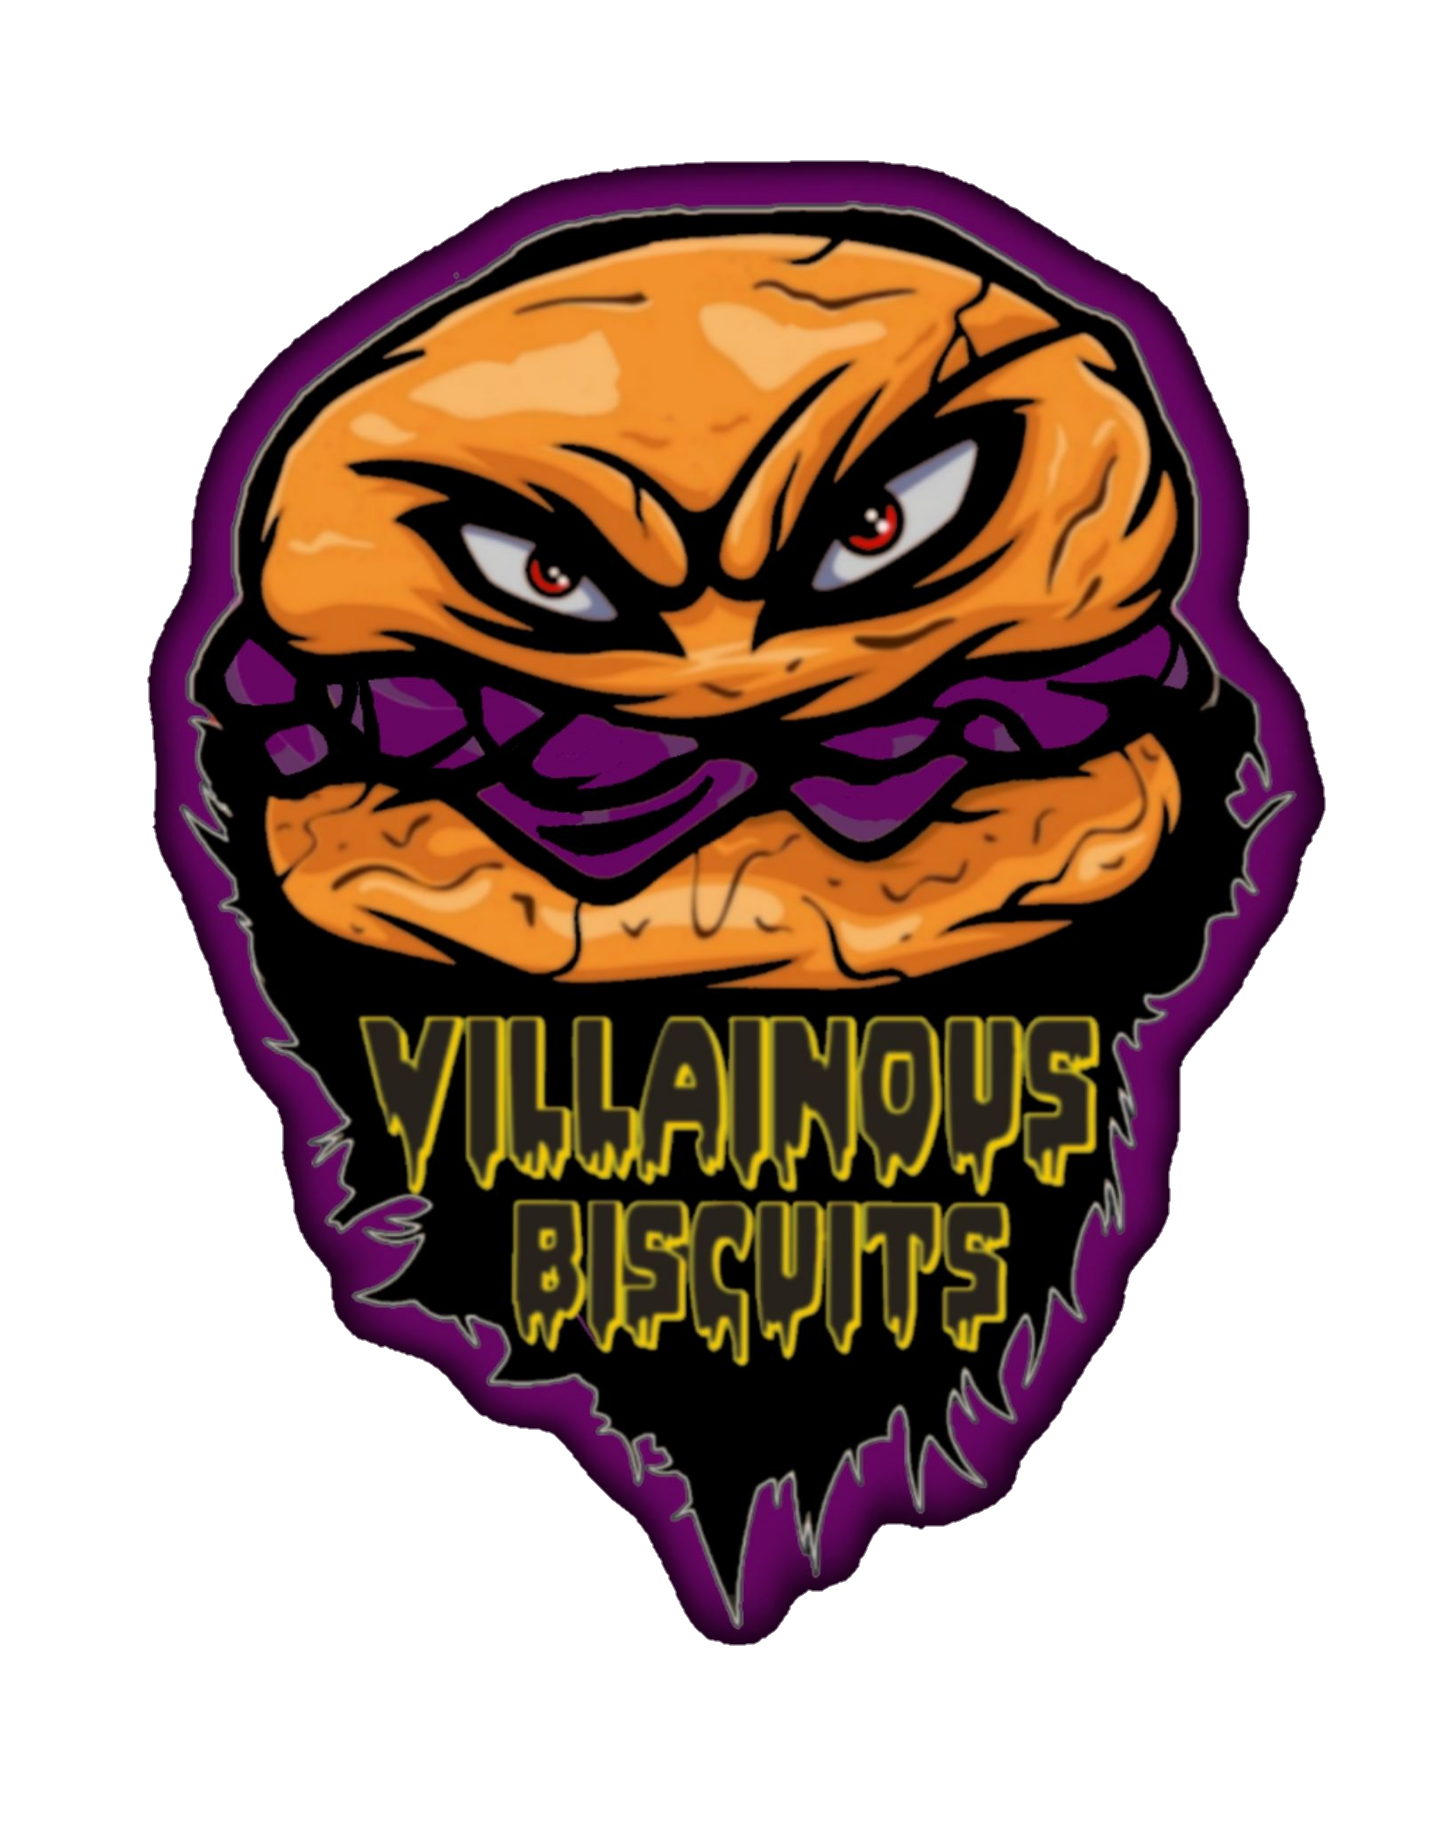 Villainous Biscuits